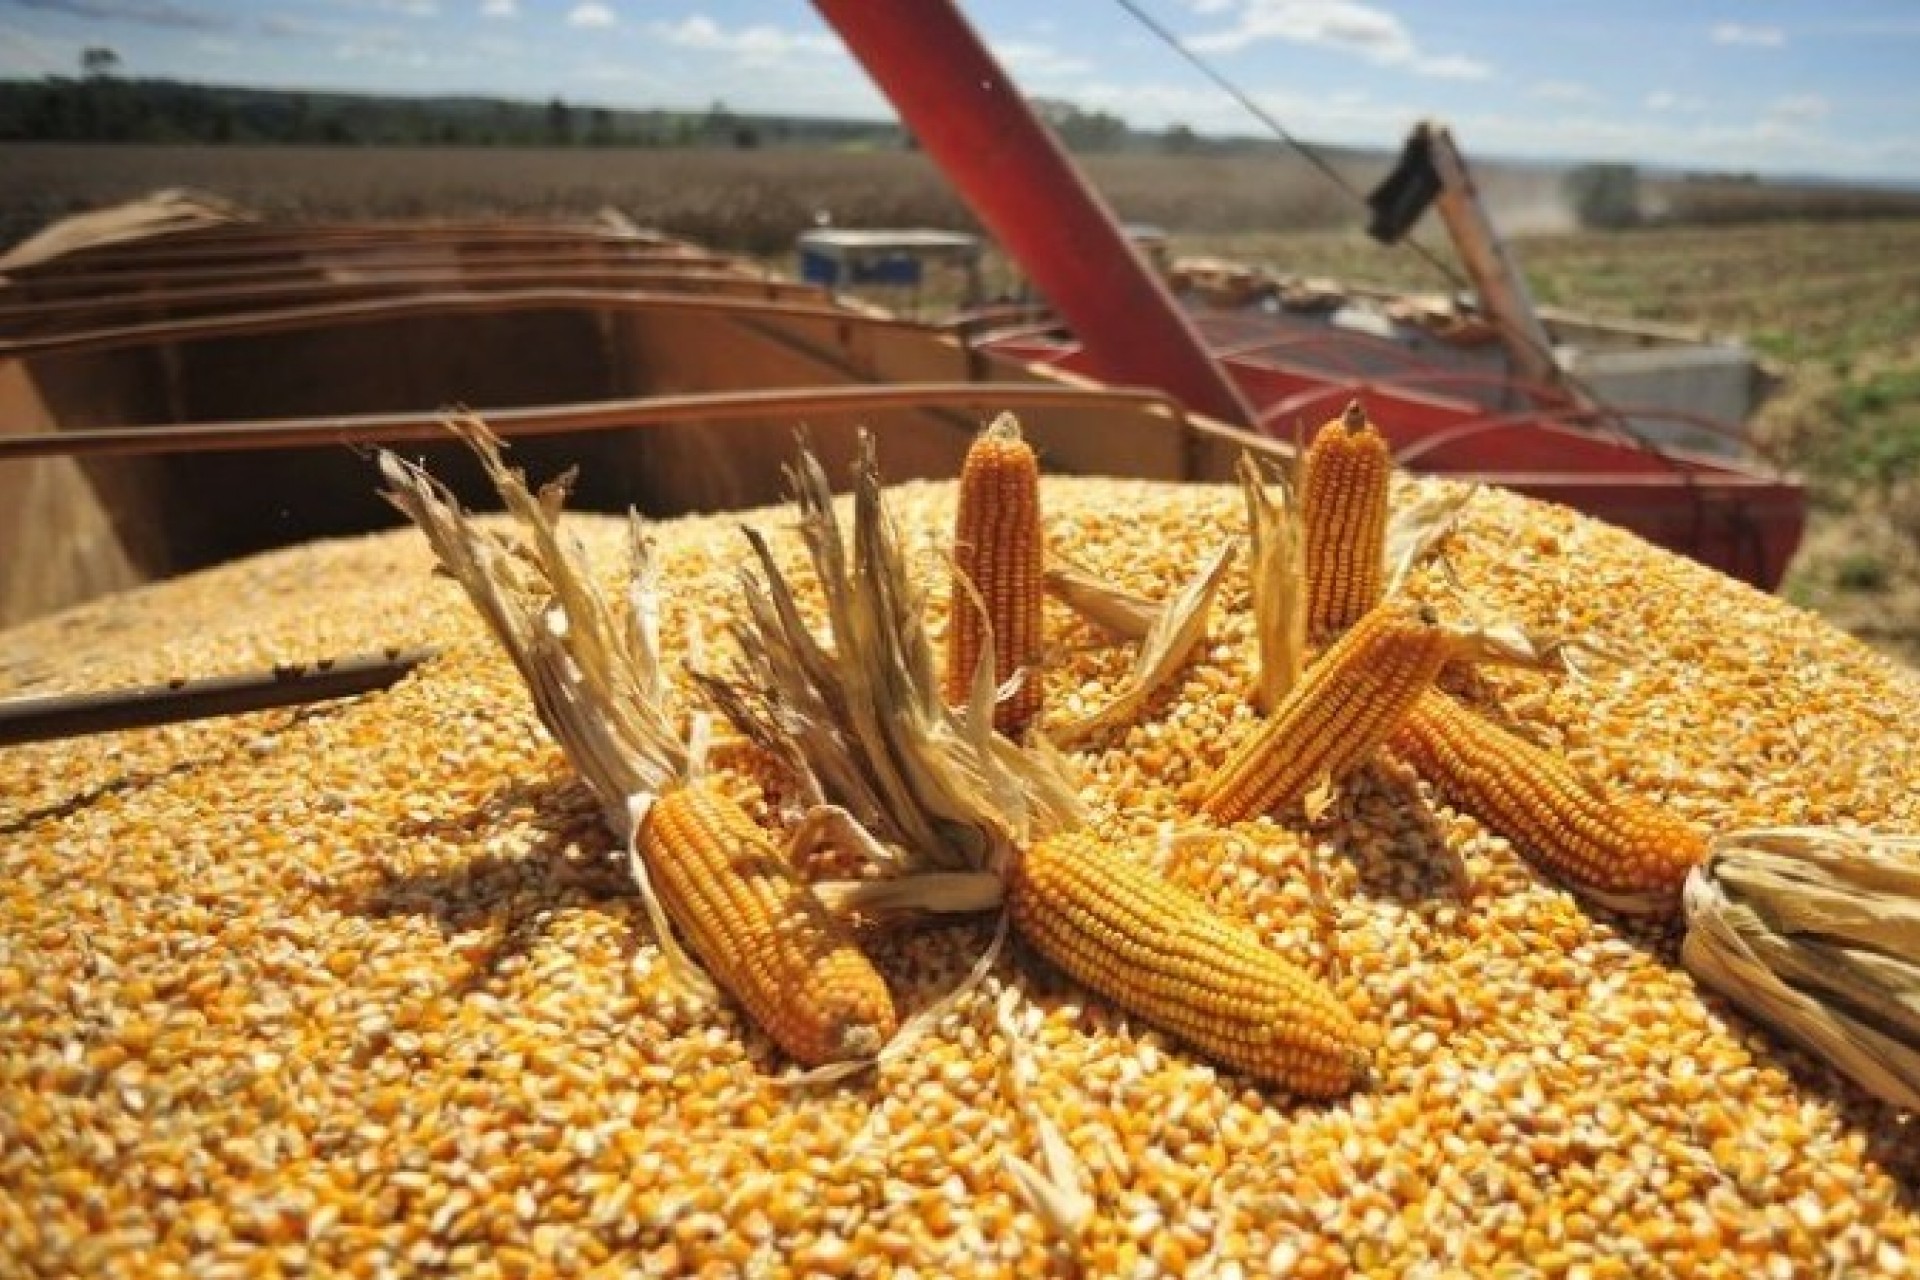 23%: Estimativa de aumento na produção de milho em relação à safra anterior